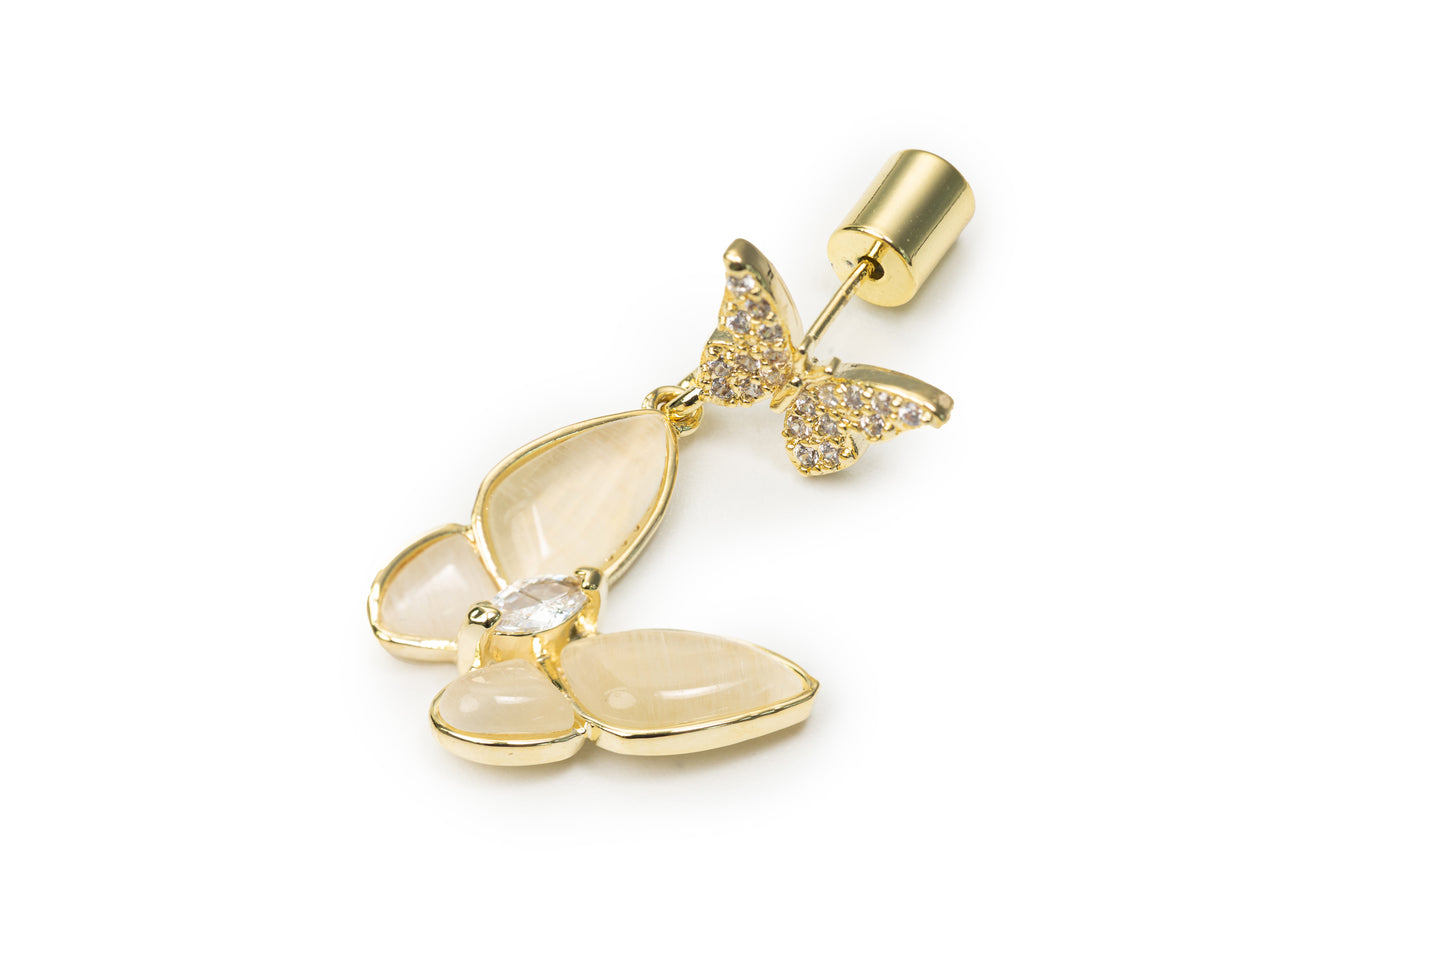 Little Butterfly Drop Earrings - Golden Drop Earrings for women